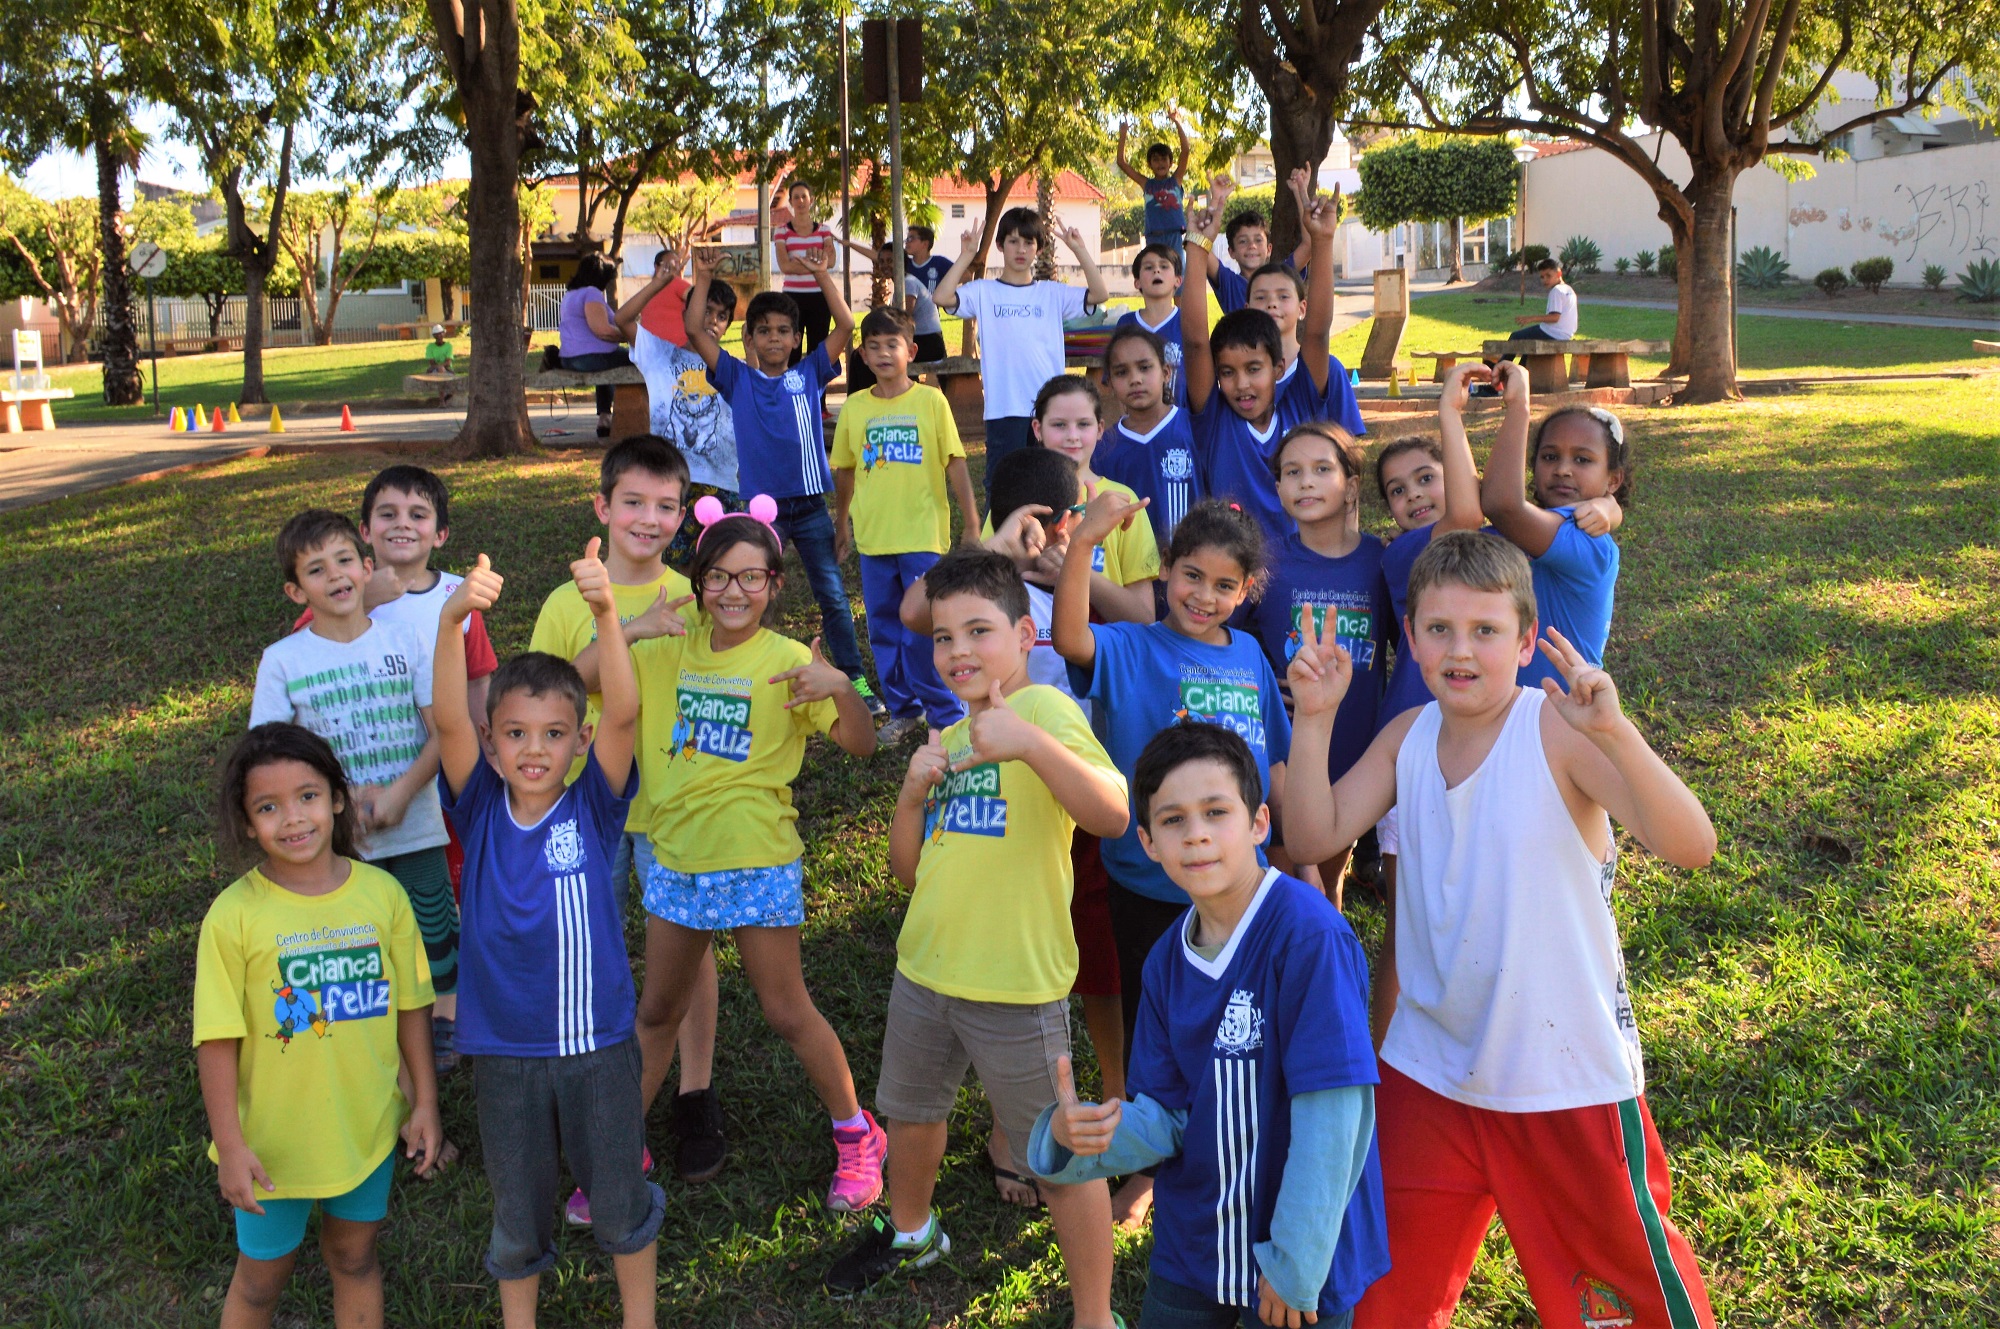 Alunos do Criança Feliz em atividade esportiva desenvolvida em parceria com o programa Atleta do Futuro do SESI-SP. Foto de 2018 por Luís Fernando da Silva / Prefeitura de Urupês